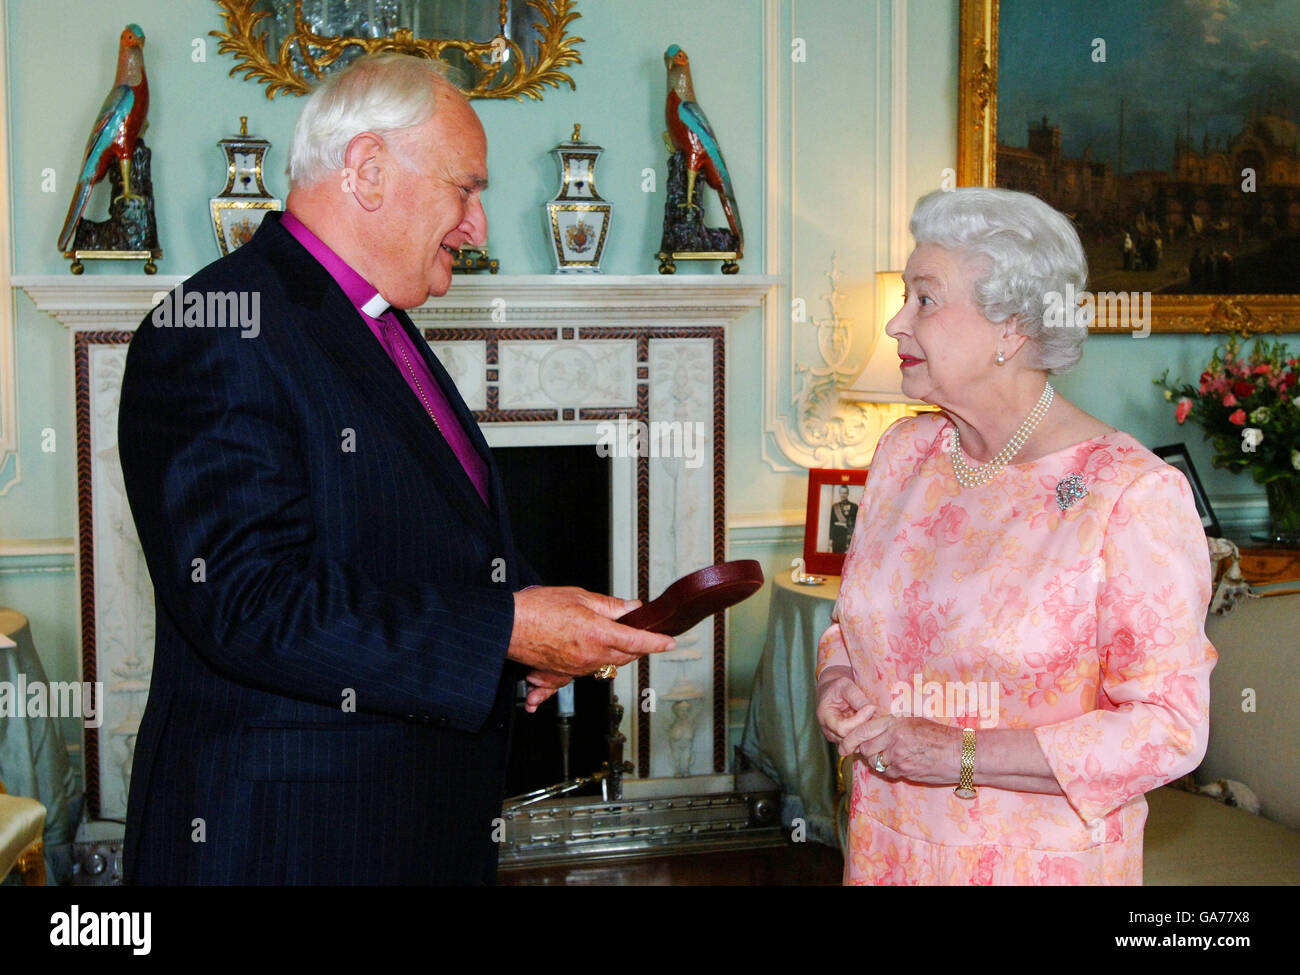 La Reina Isabel II de Gran Bretaña recibe a Lord Eames, a quien ha invertido con la insignia de un Miembro de la Orden del Mérito, en la Sala de audiencias privadas, el Palacio de Buckingham hoy. Foto de stock